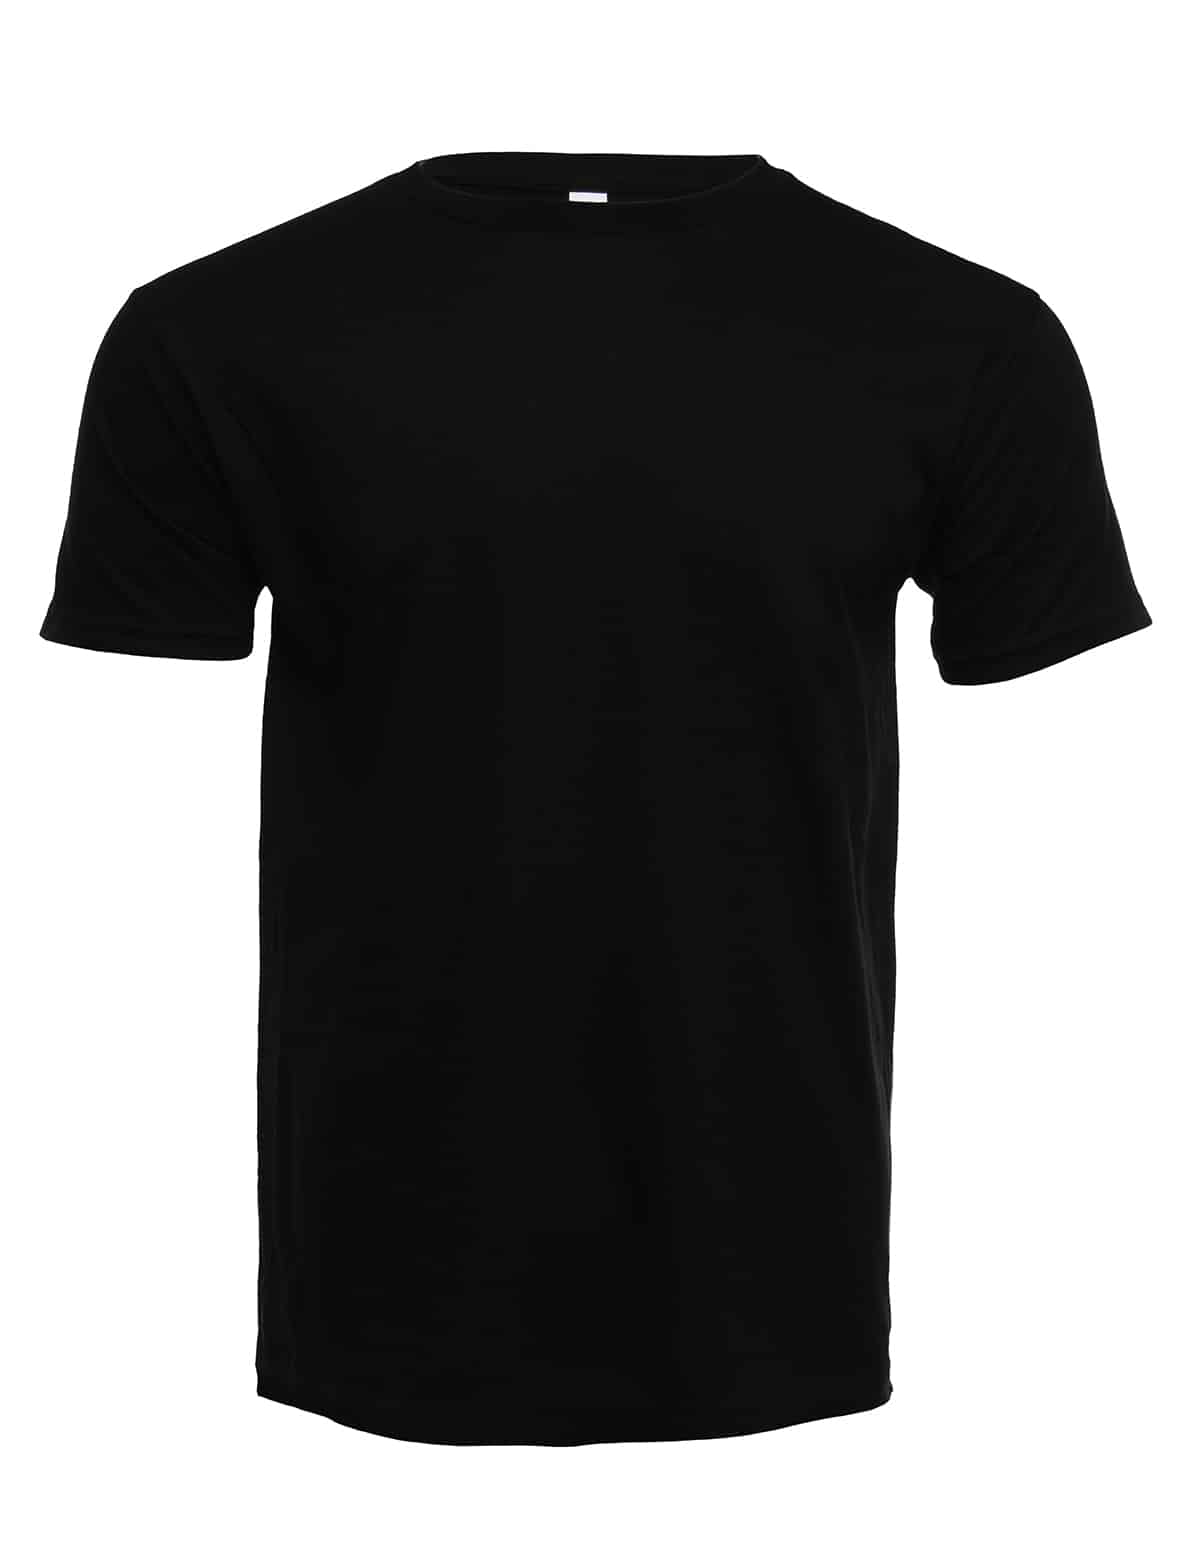 Retro Ring-Spun T-shirt